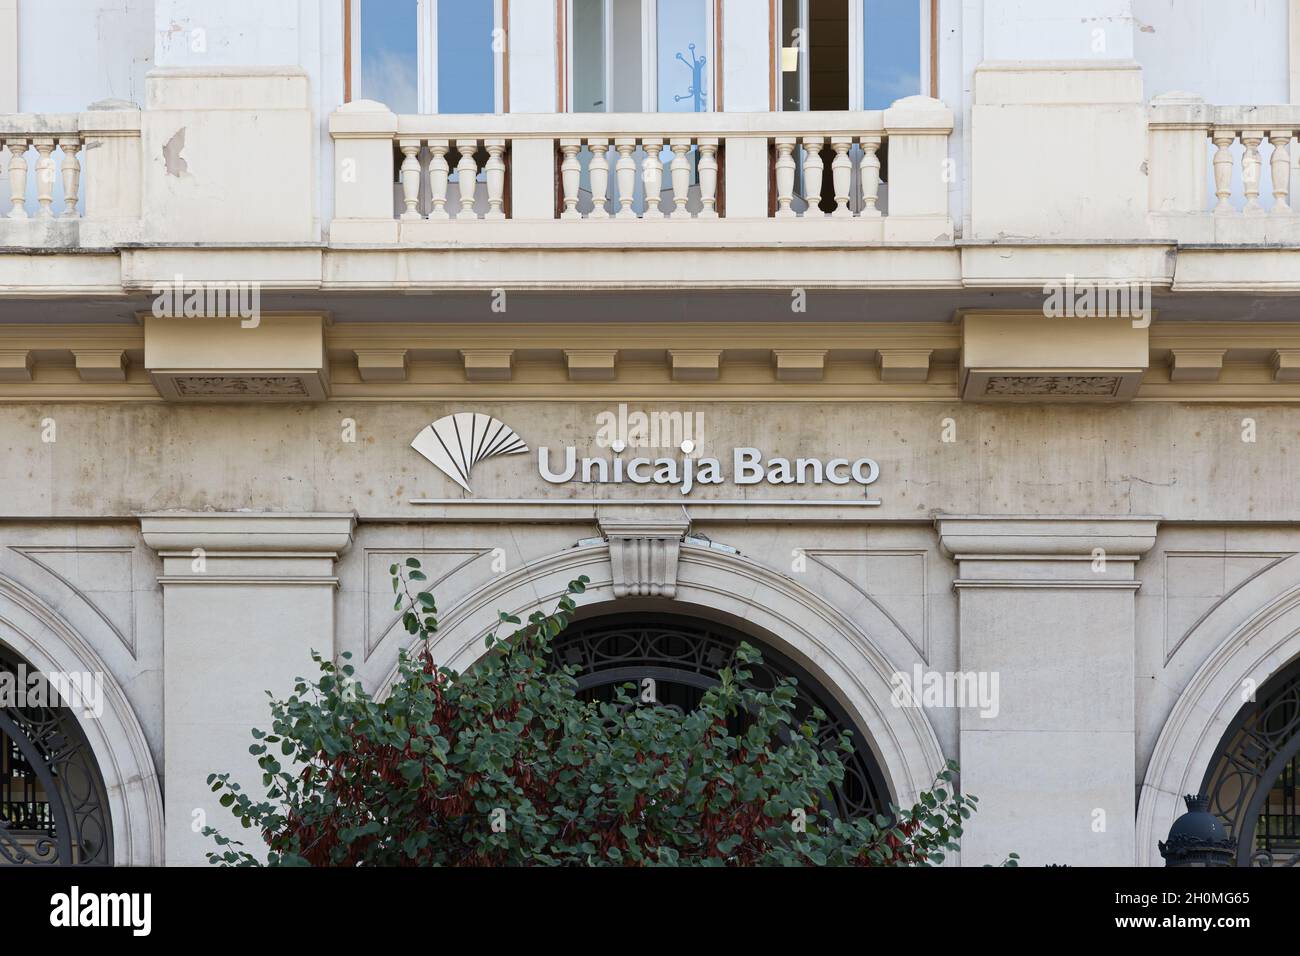 VALENCIA, ESPAÑA - 21 DE SEPTIEMBRE de 2021: Unicaja Banco es un banco de inversión y empresa española de servicios financieros Foto de stock